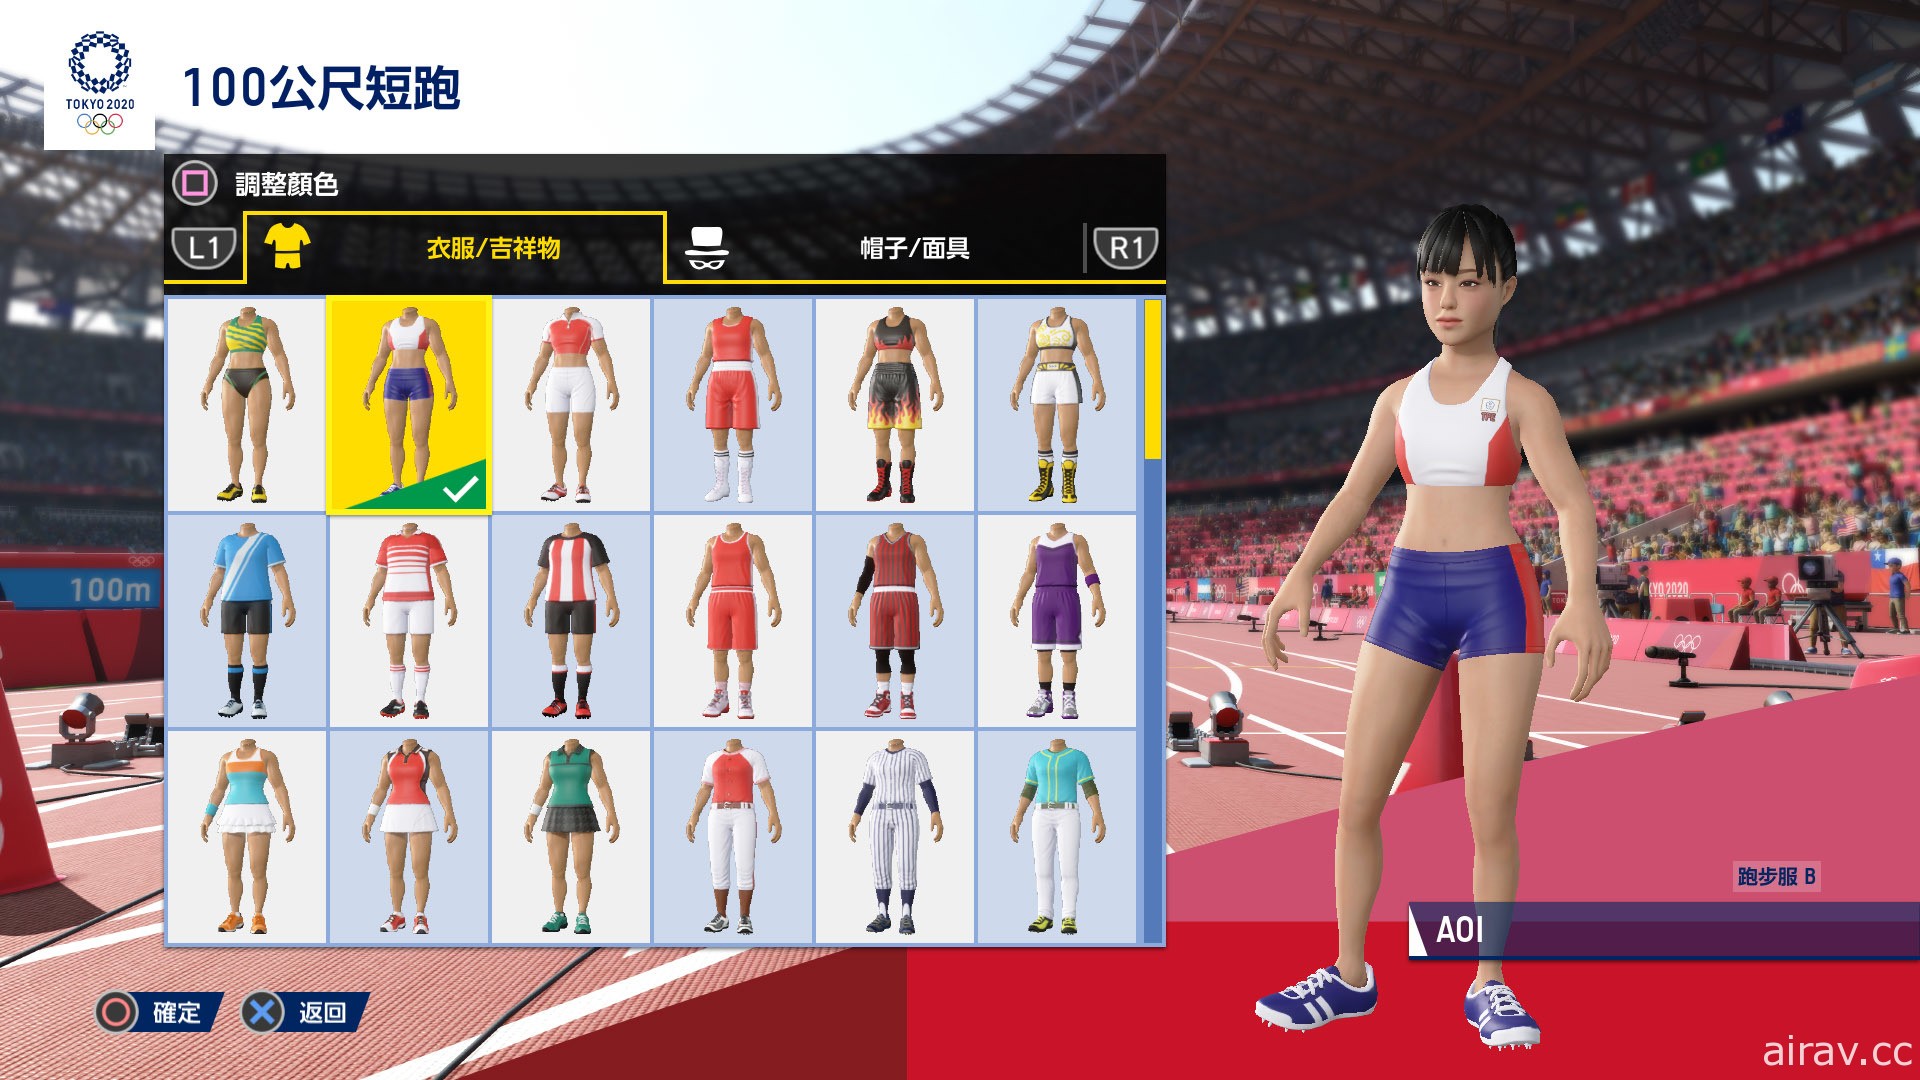 《2020 東京奧運 The Official Video Game》PC 版今日發售 免費更新「索尼克」布偶裝